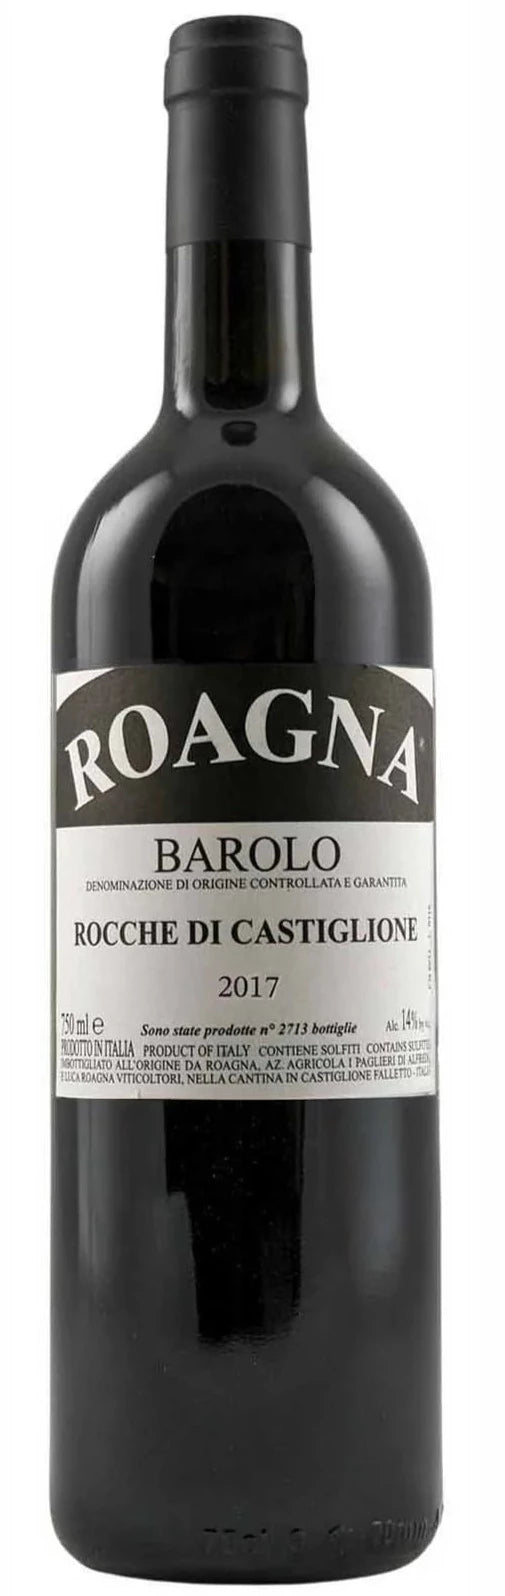 Roagna Barolo Rocche di Castiglione 2017